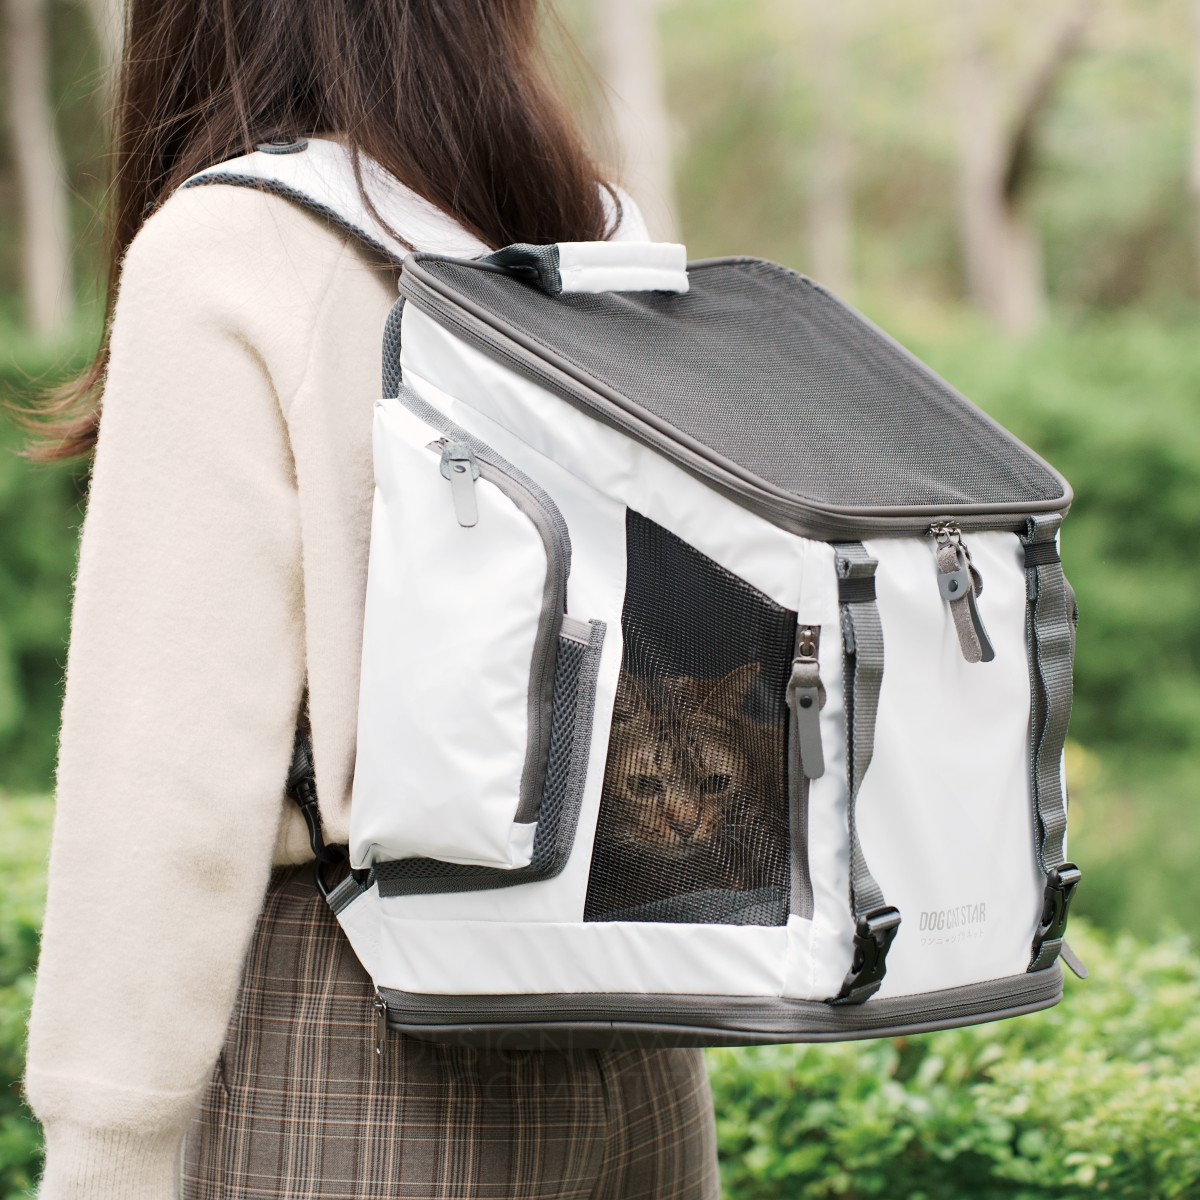 Little Cube Pet Backpack by Planddo Co., Ltd.